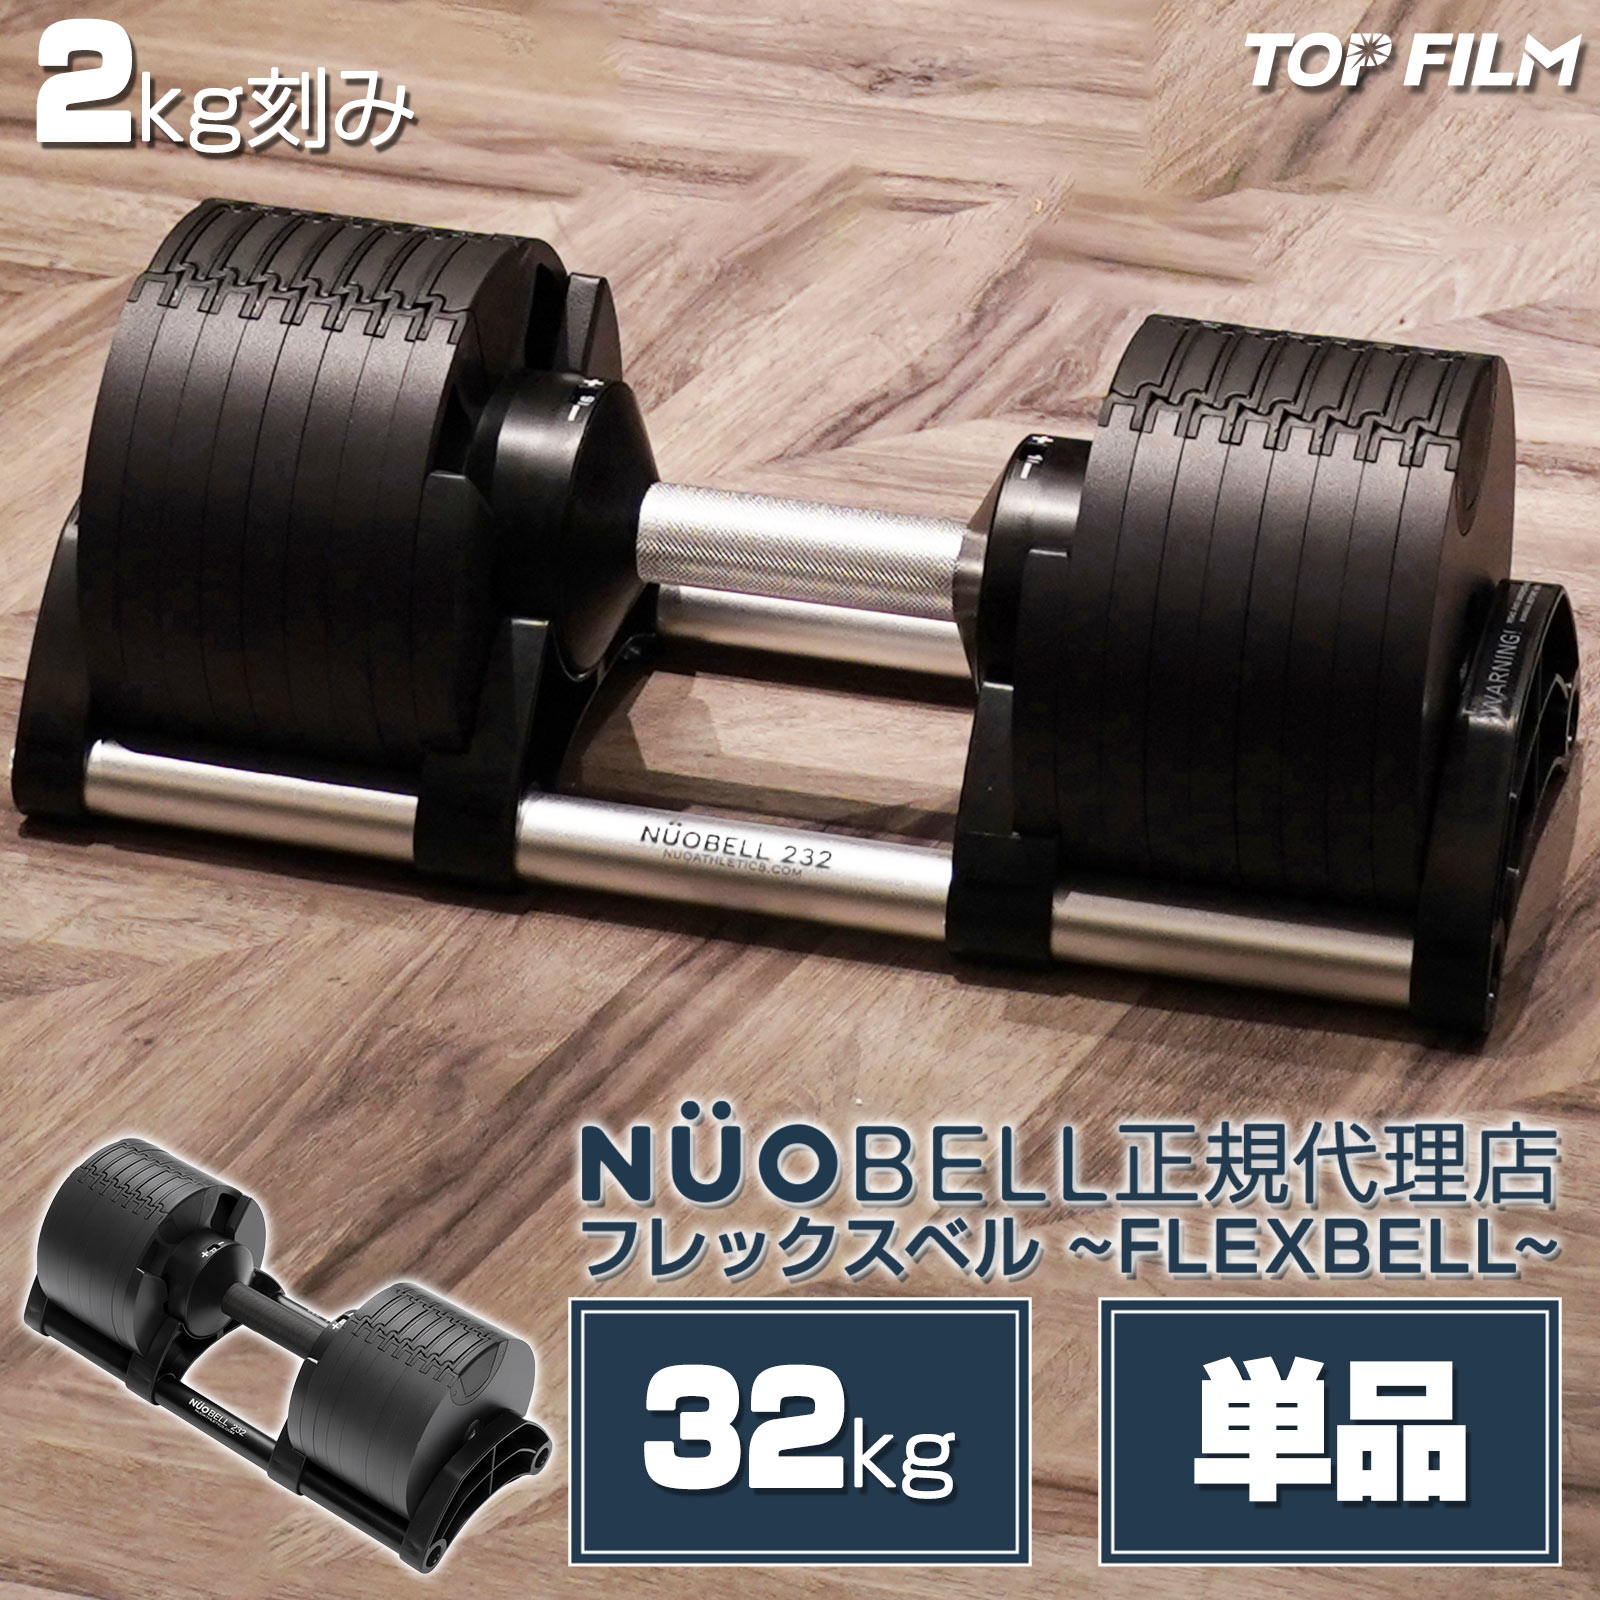 ダンベル 可変式 flex 32kg 筋トレ TOP FILM : flexbell32